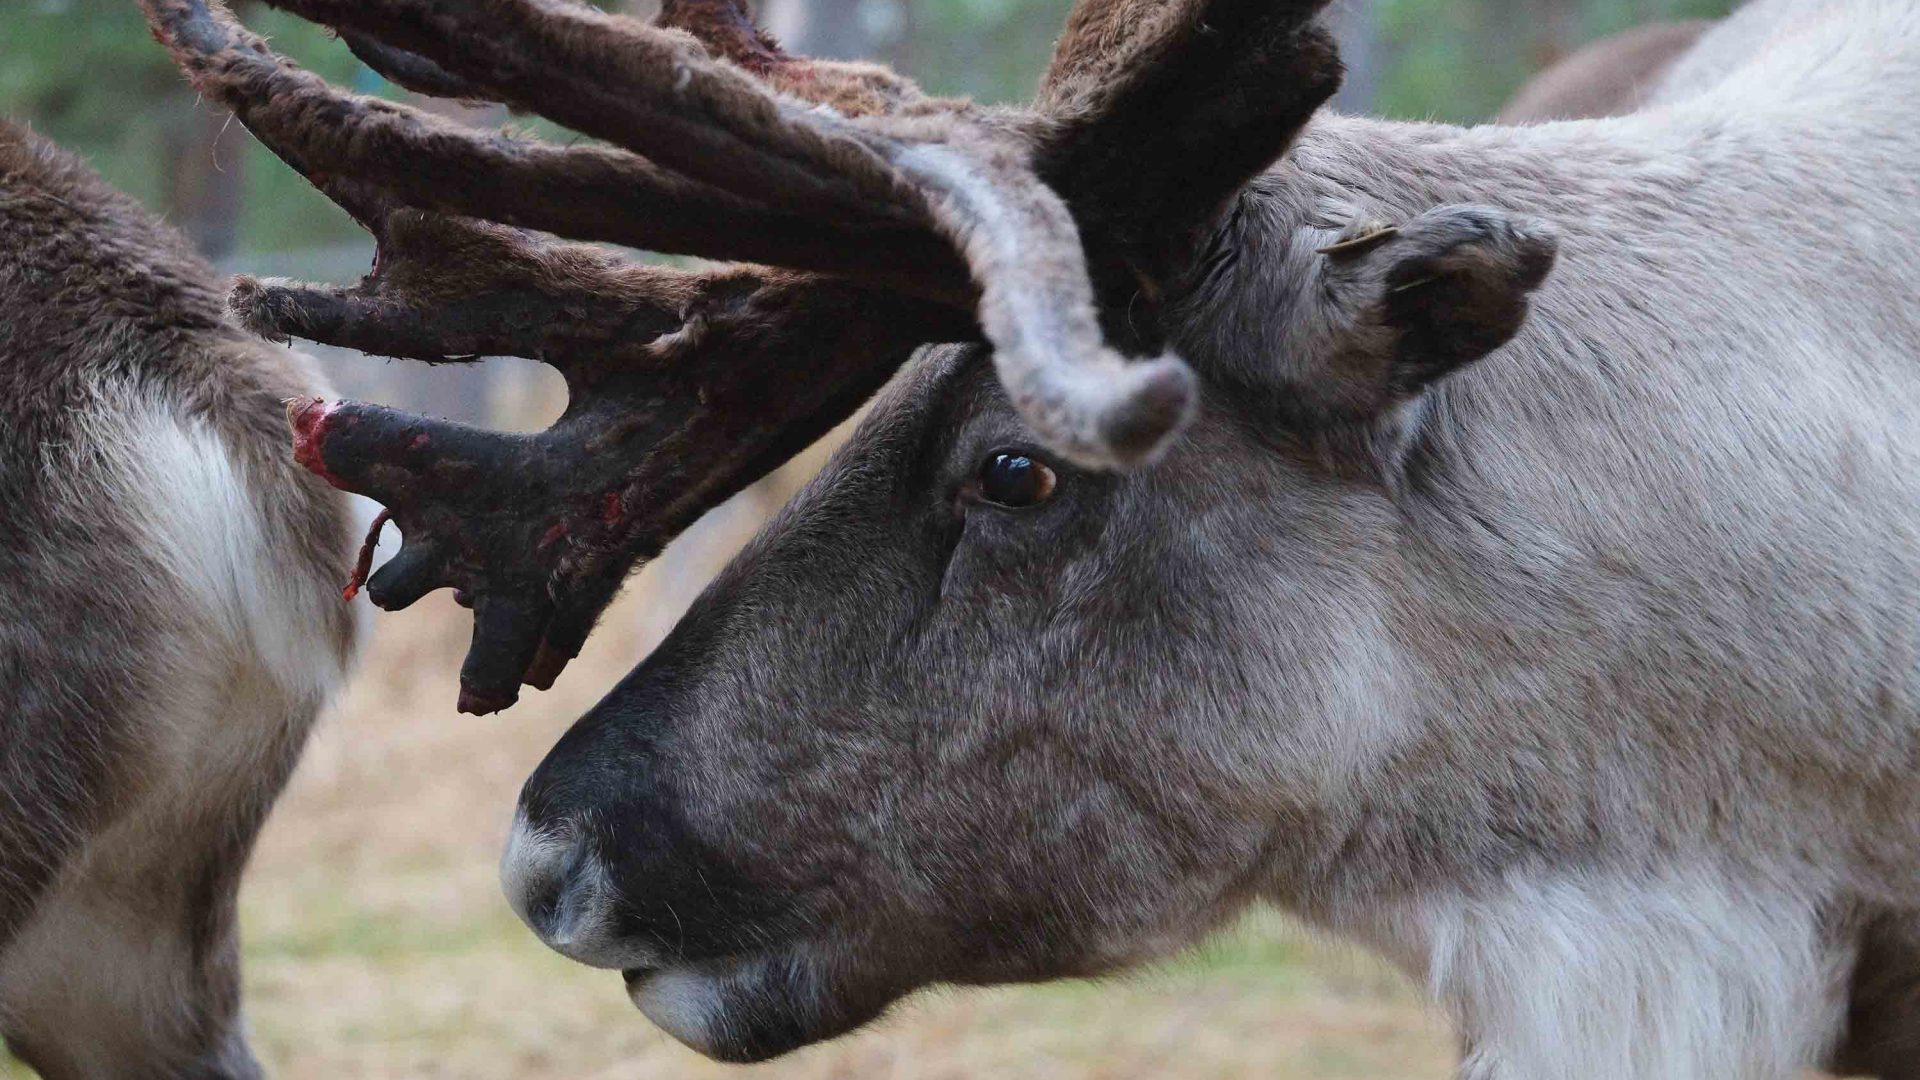 A reindeers head.